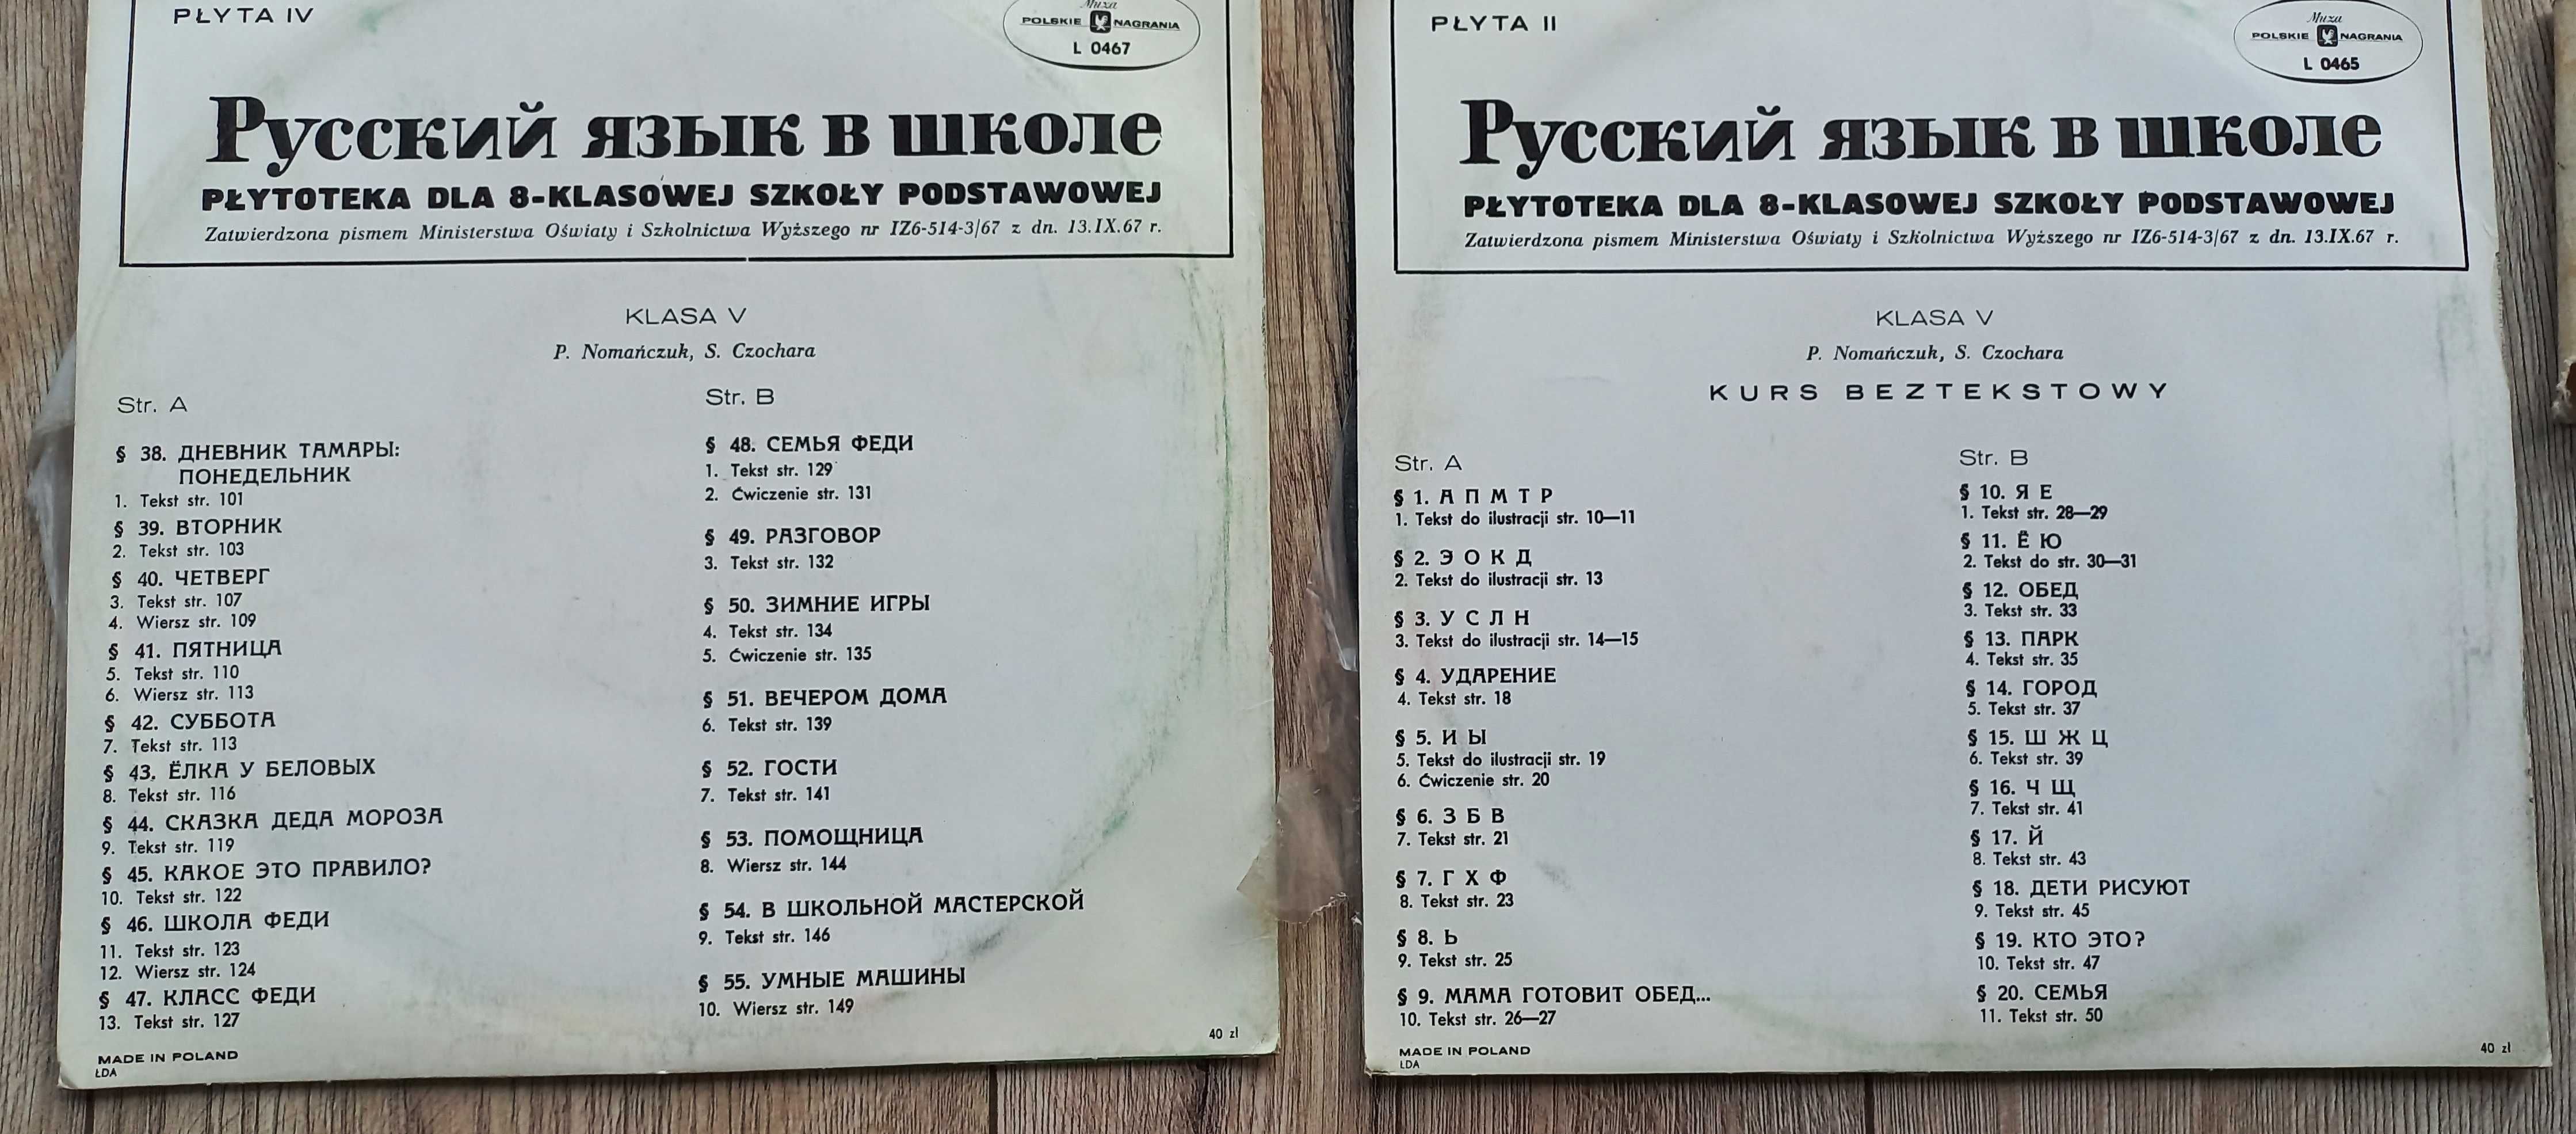 Płytoteka języka rosyjskiego klasa V 5 płyty winylowe